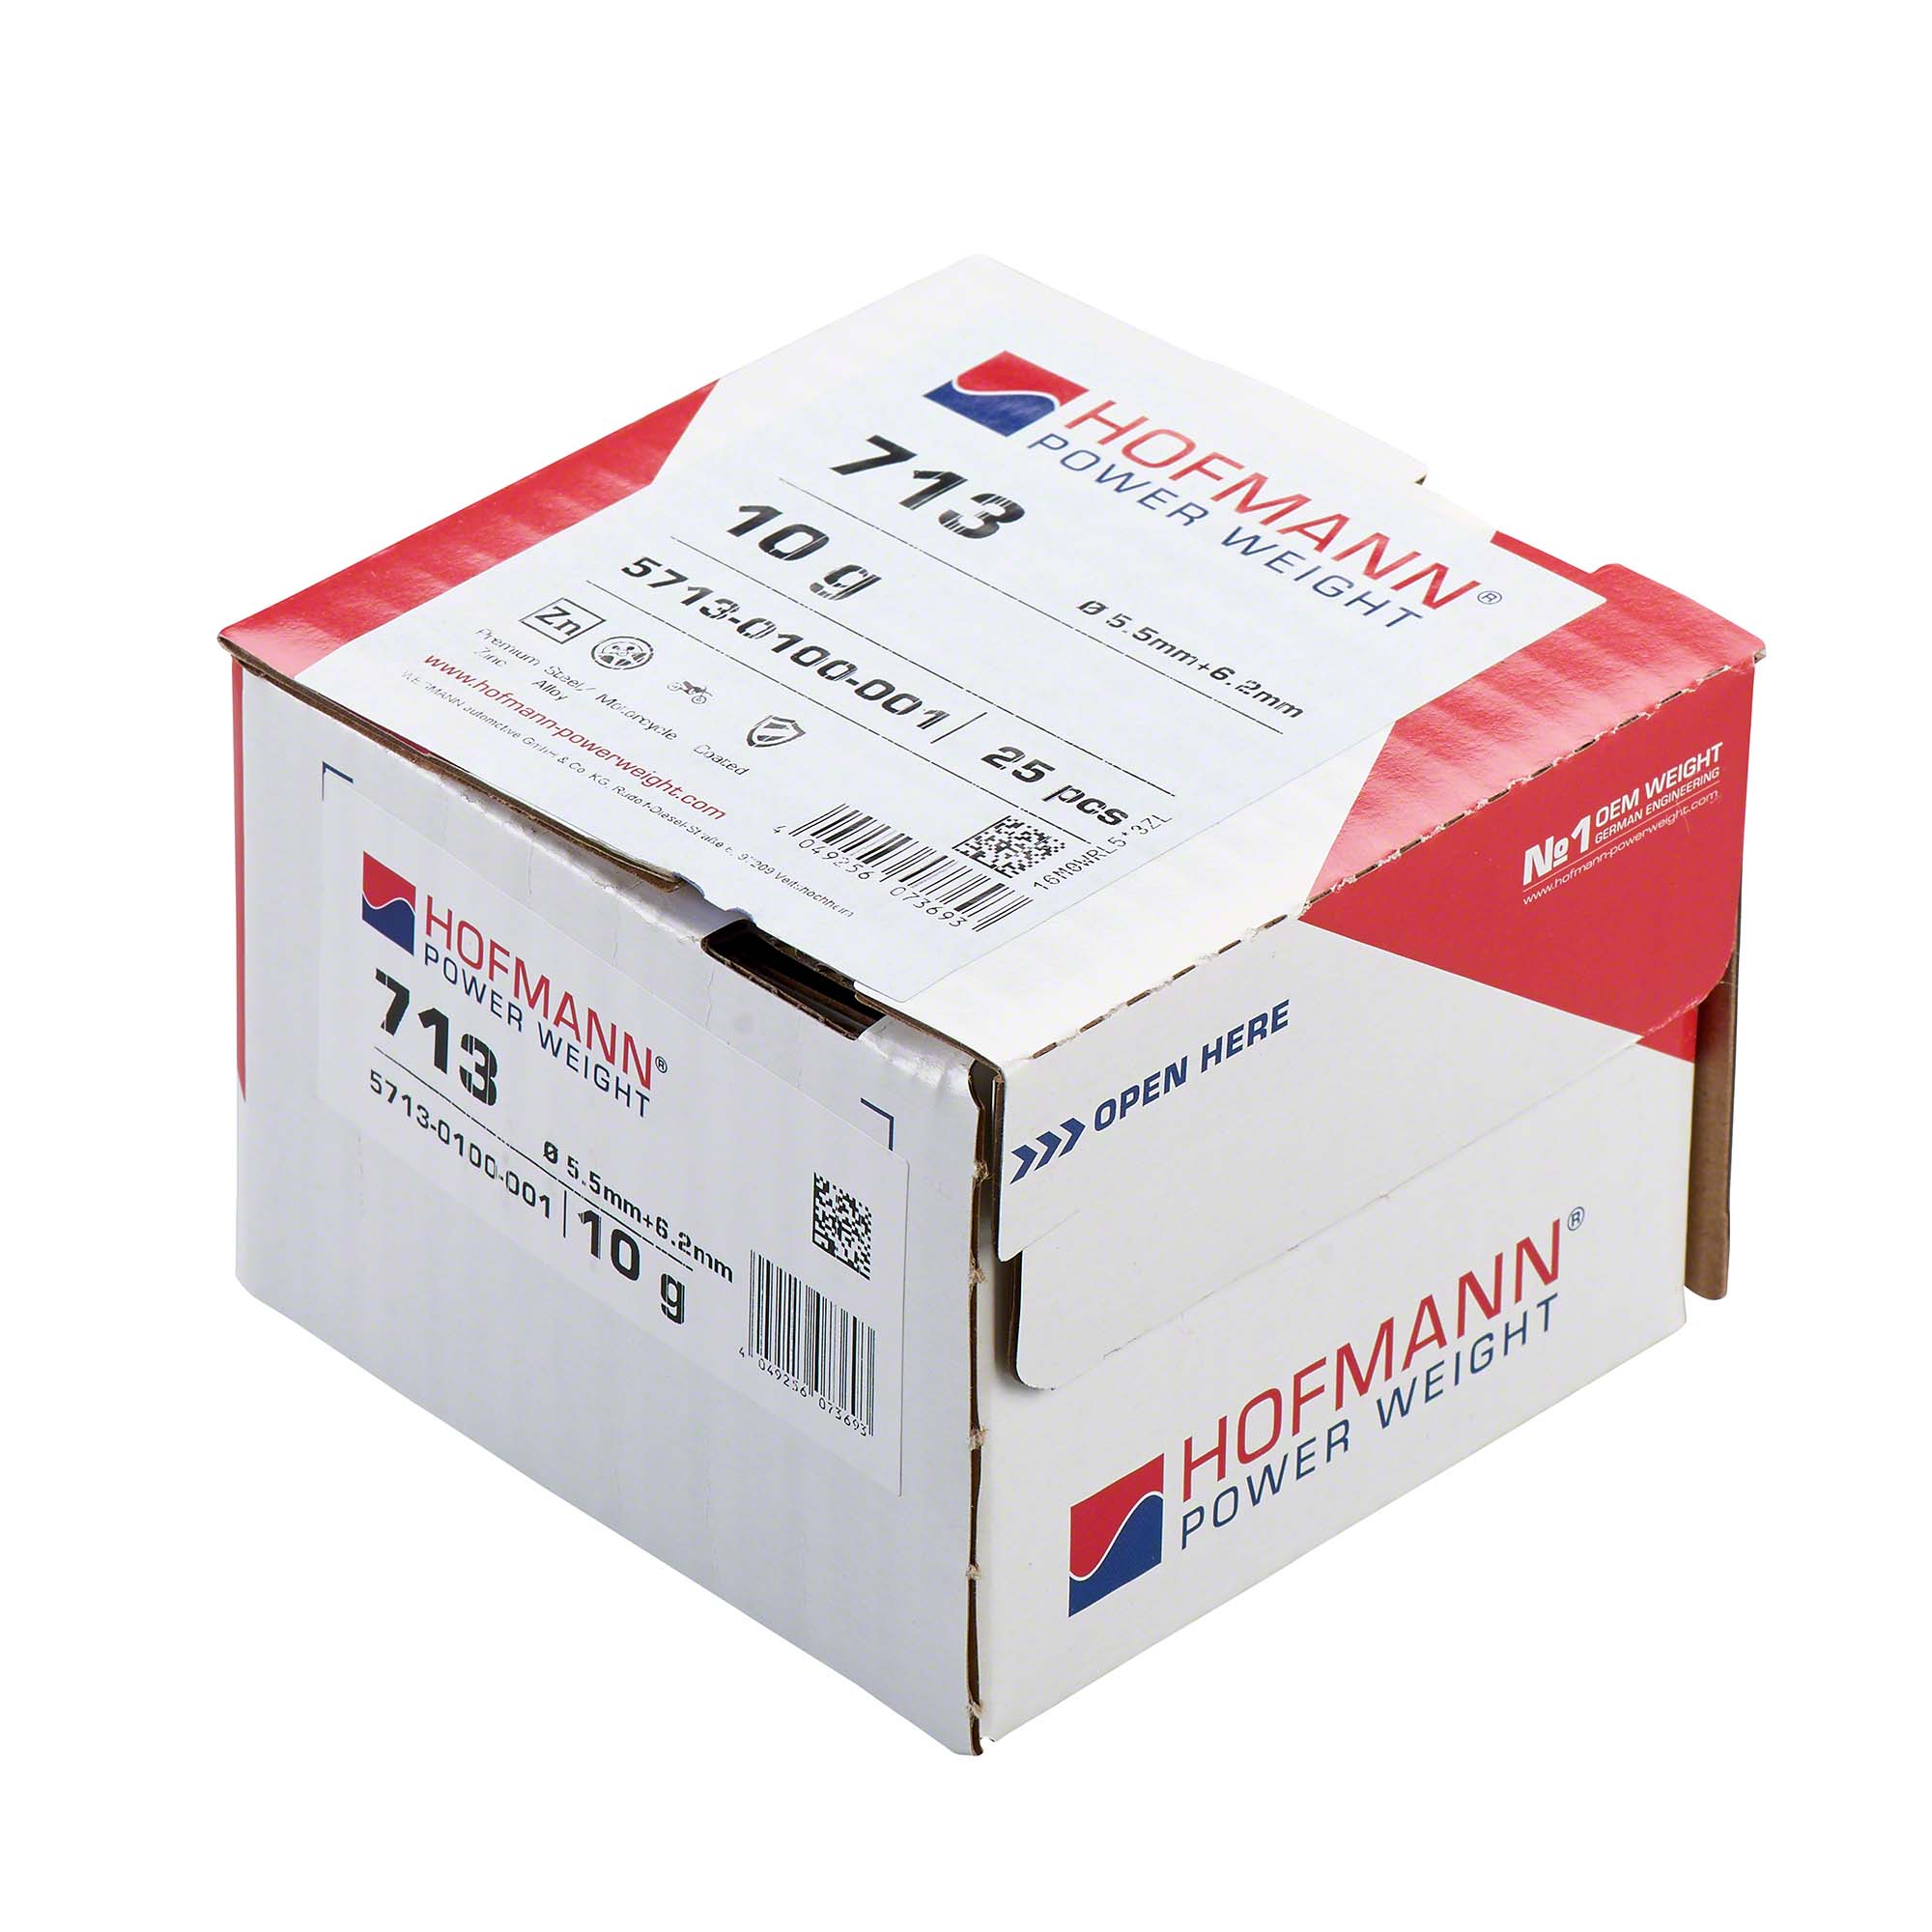 HOFMANN POWER WEIGHT-Speichengewicht - Typ 713, 10 g, Zink-5713-0100-001